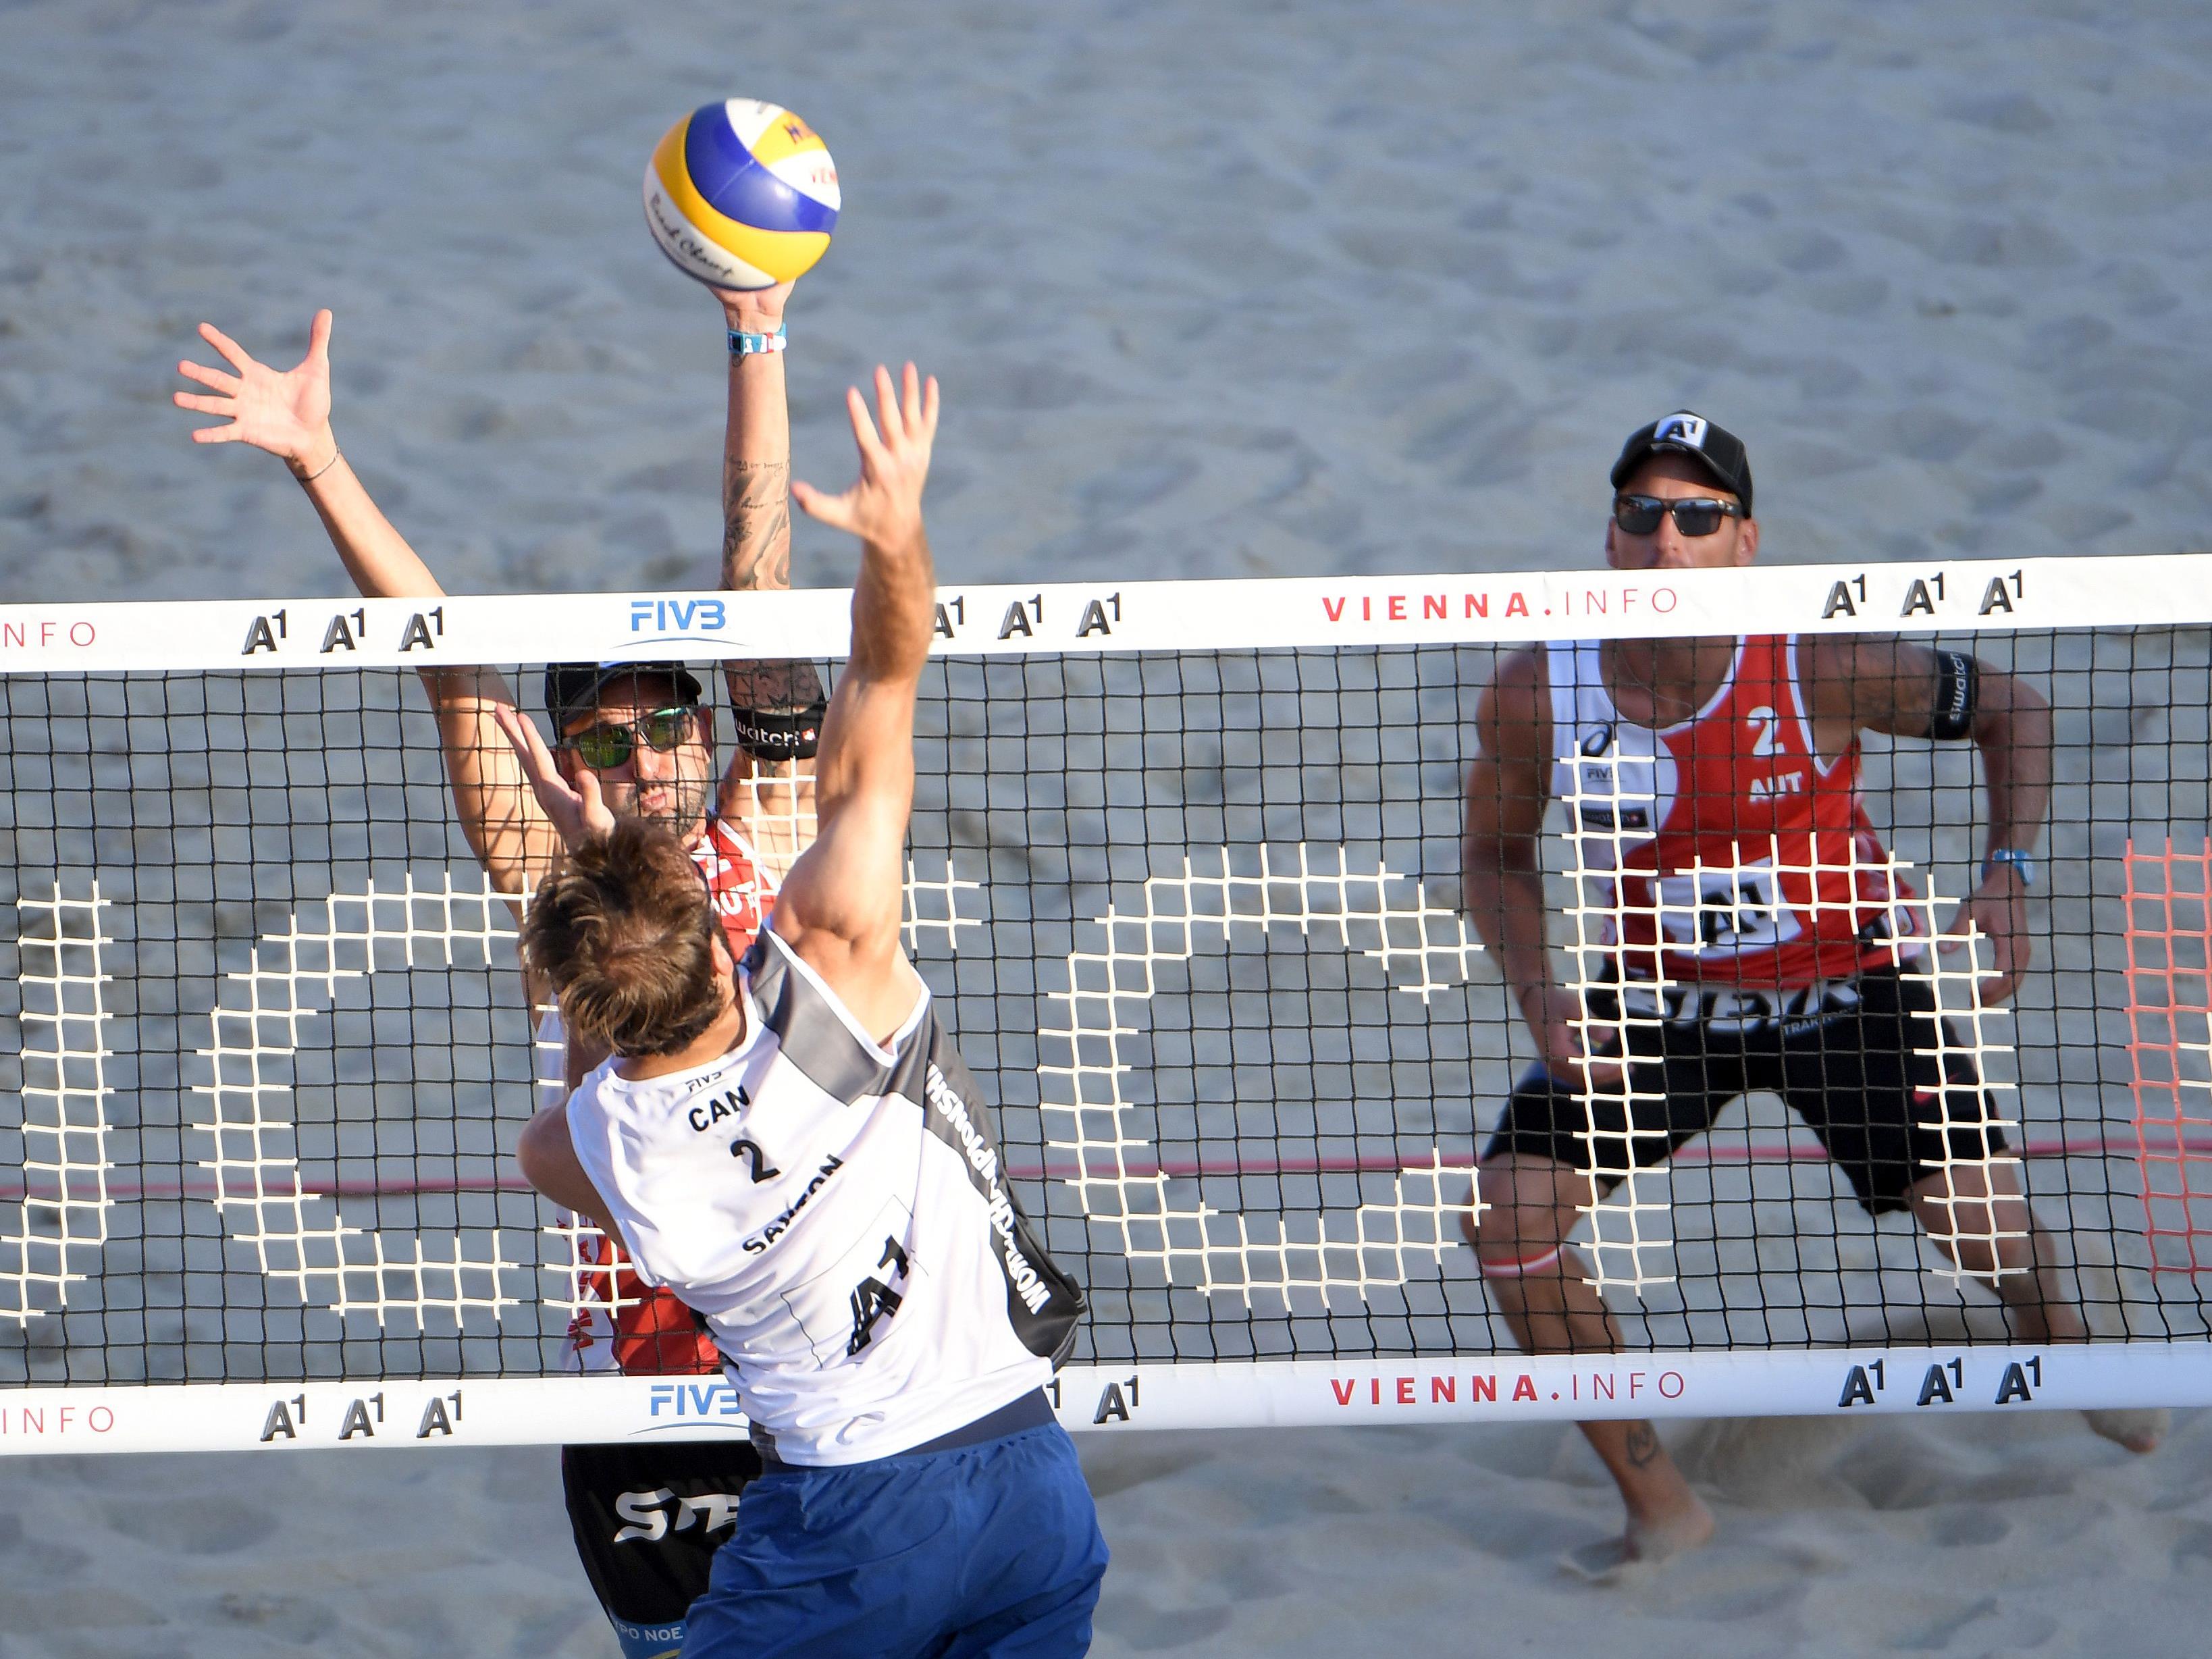 Doppler/Horst mussten am Dienstag ihre erste Niederlage bei der Beach-WM in WIen einstecken.